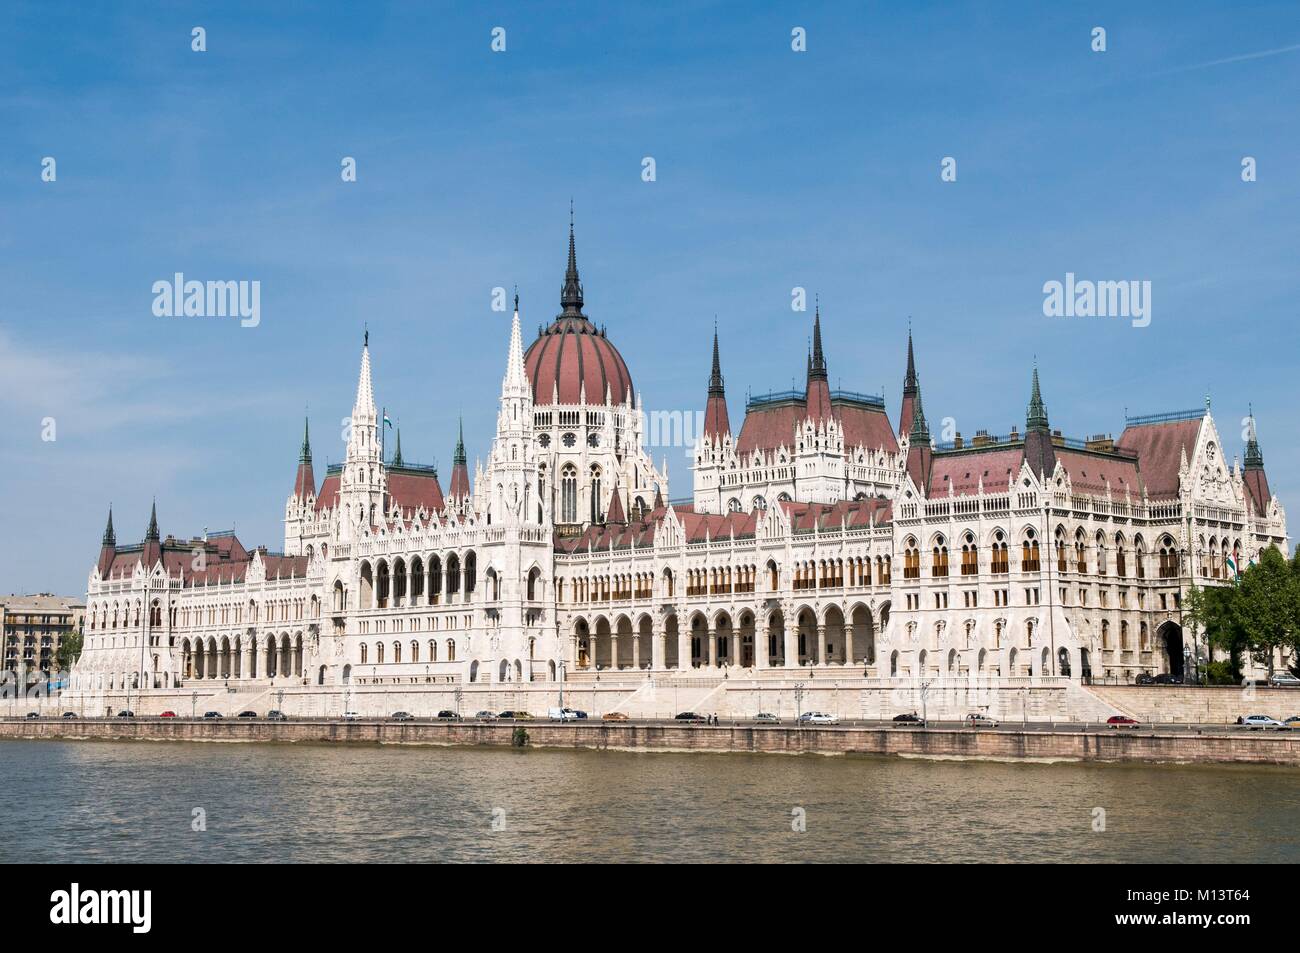 Ungarn, Budapest, Pest, die Donau Banken als Weltkulturerbe von der UNESCO und dem Parlament aufgeführt Stockfoto